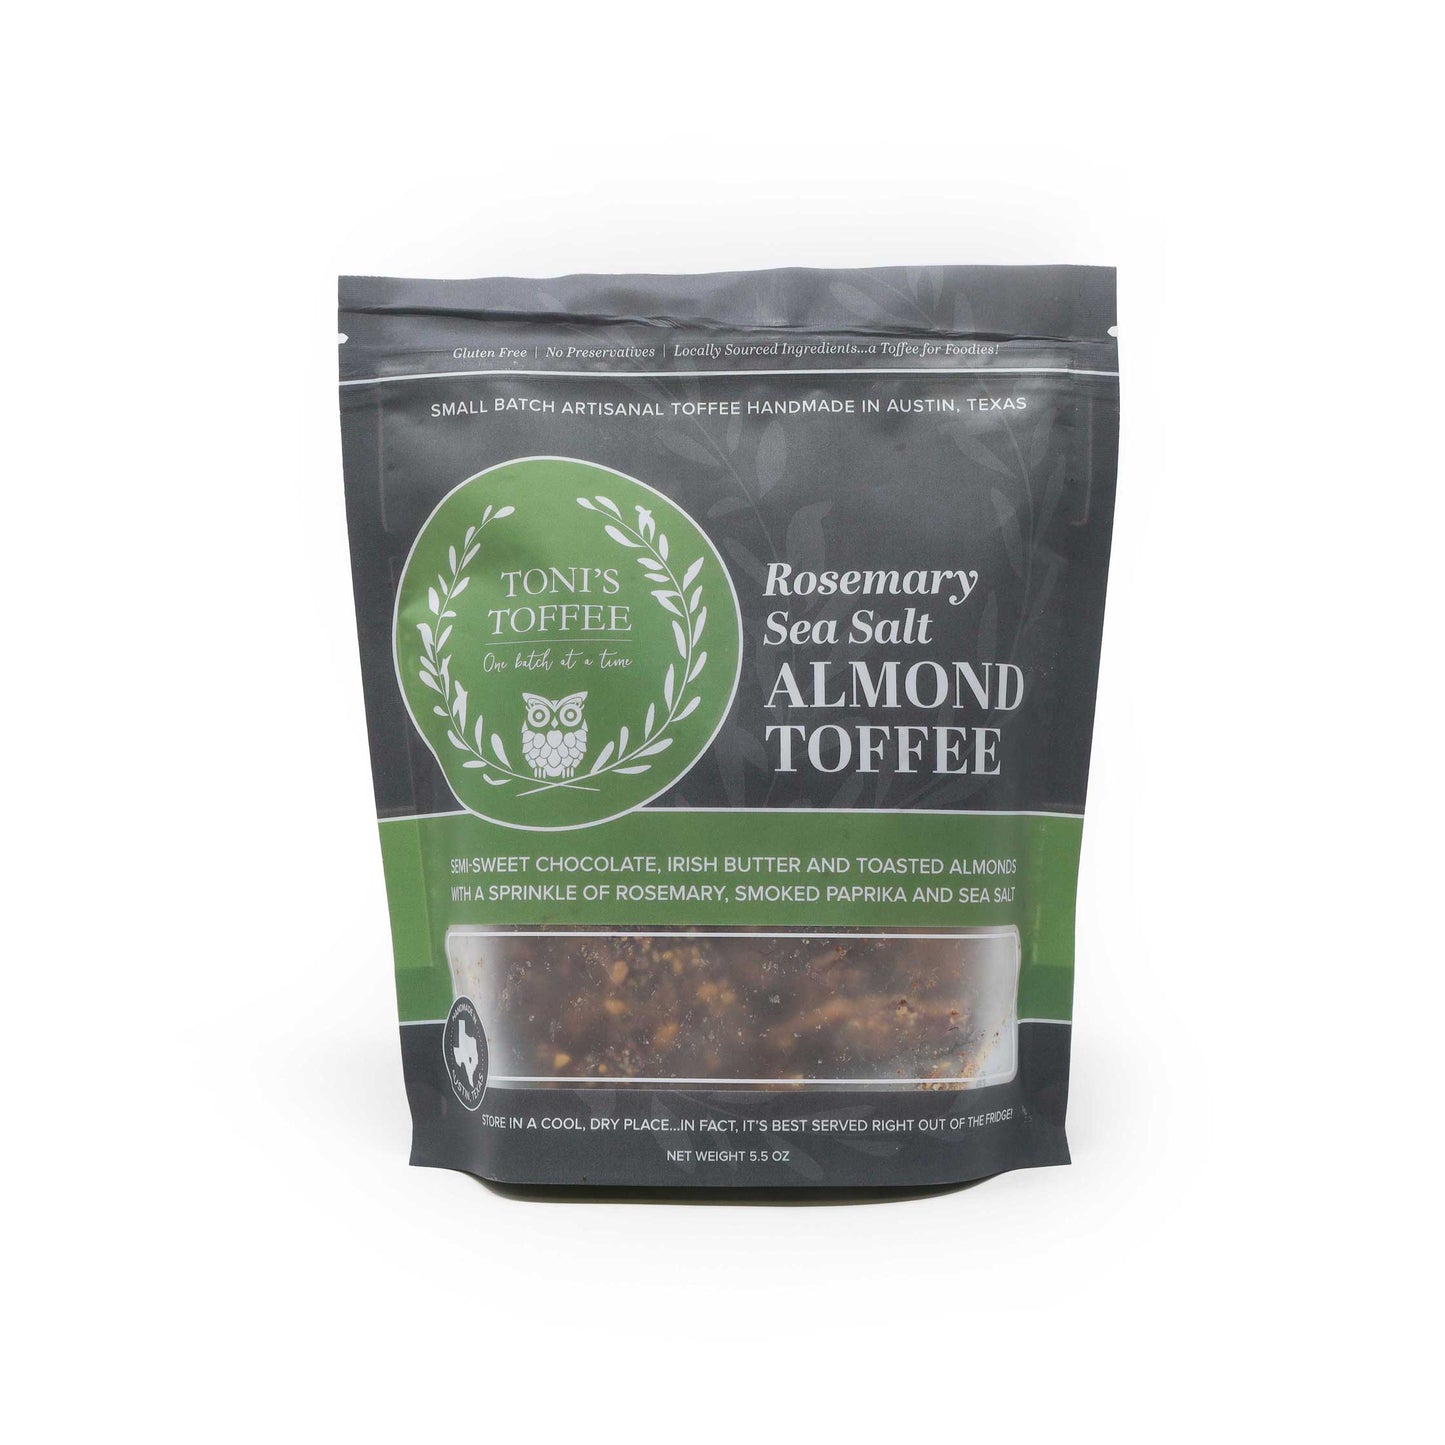 Rosemary Sea Salt Almond Toffee